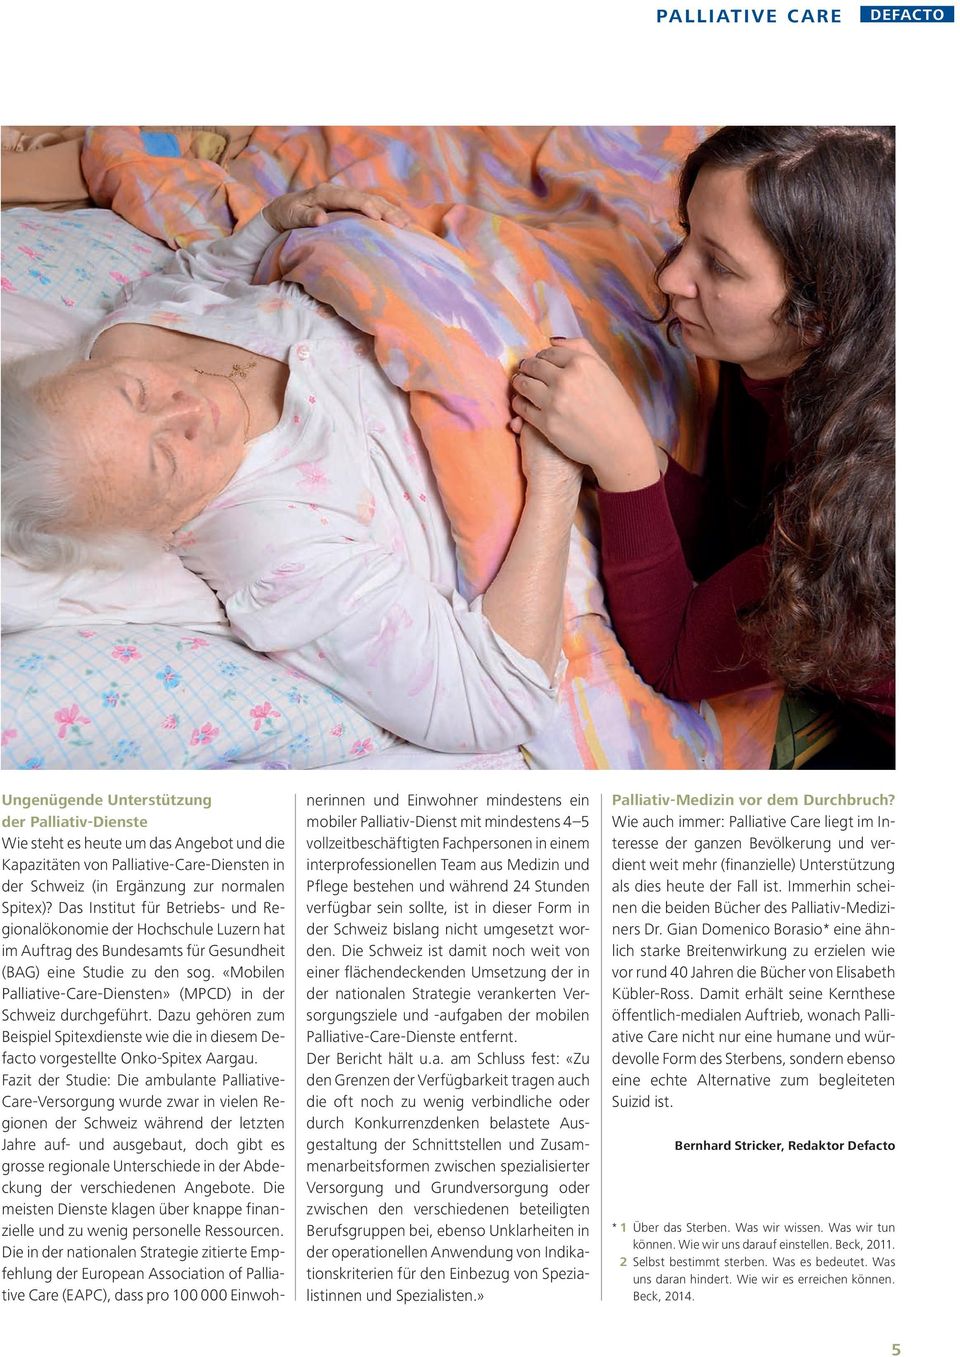 «Mobilen Palliative-Care-Diensten» (MPCD) in der Schweiz durchgeführt. Dazu gehören zum Beispiel Spitexdienste wie die in diesem Defacto vorgestellte Onko-Spitex Aargau.